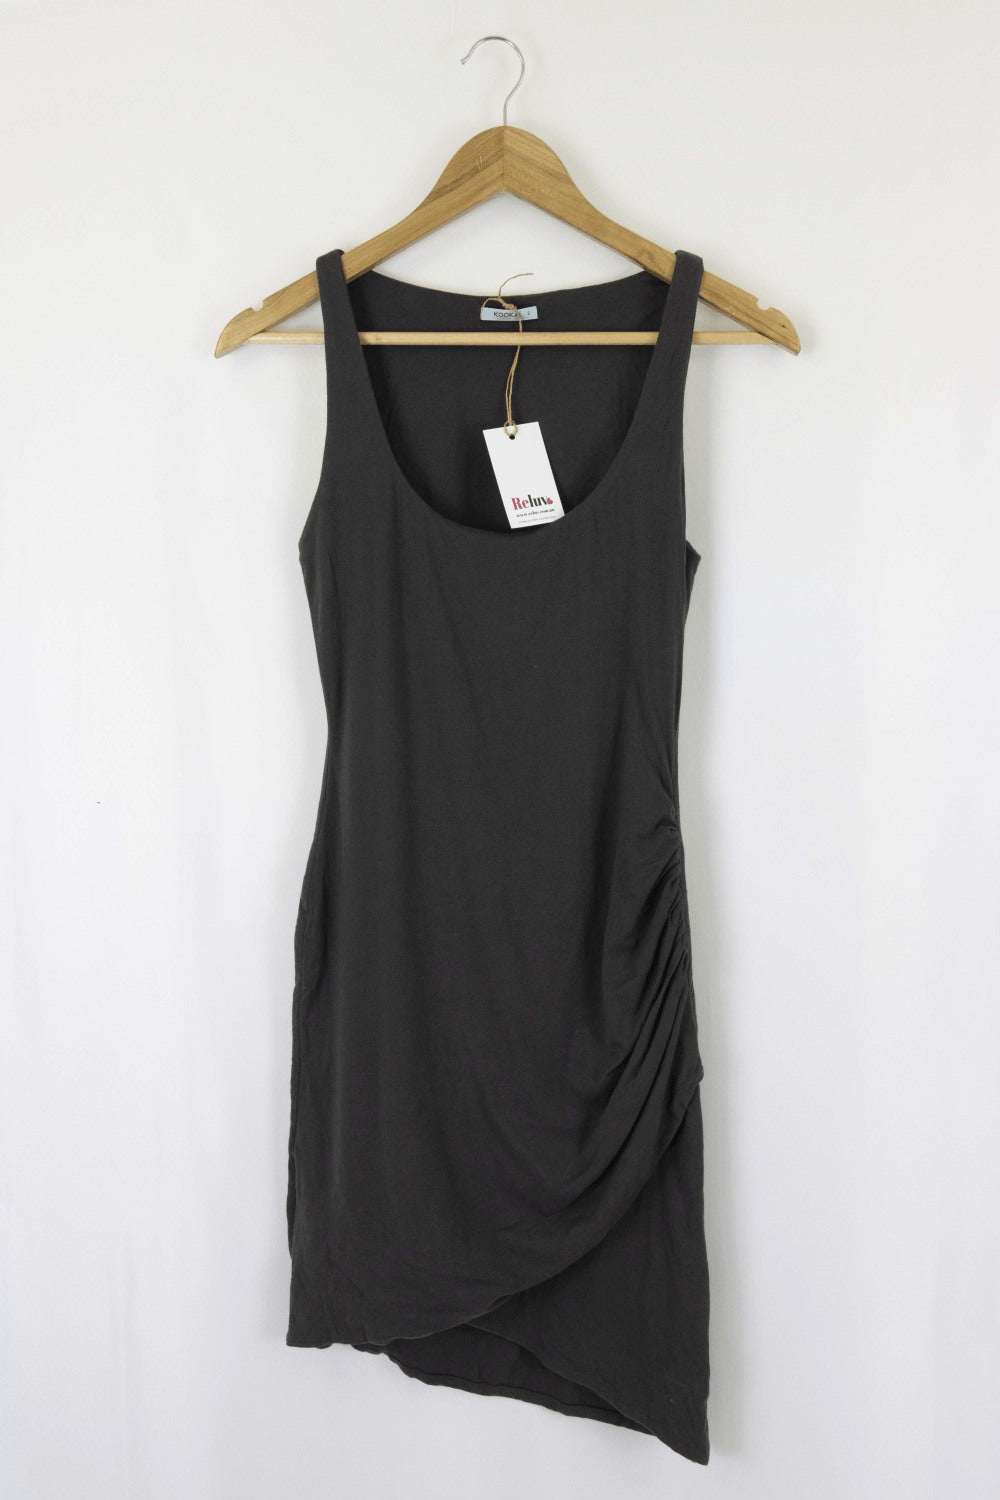 Kookai Grey Dress 2 (AU 12)